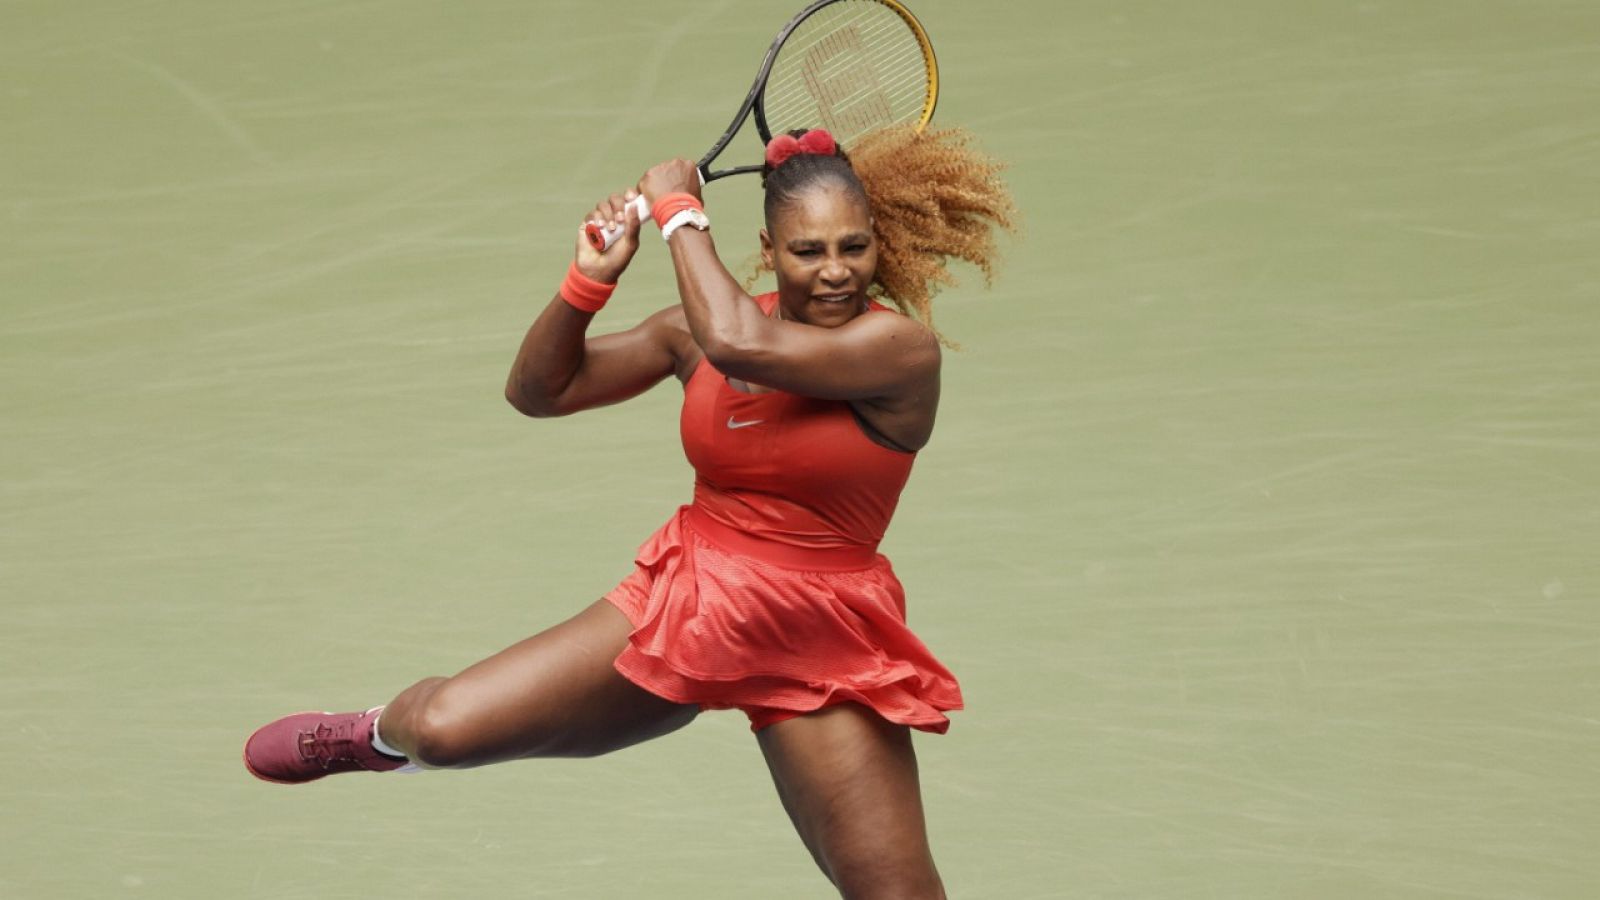 La tenista estadounidense Serena Williams golpea la bola en su partido ante Tsvetana Pironkova en el US Open.